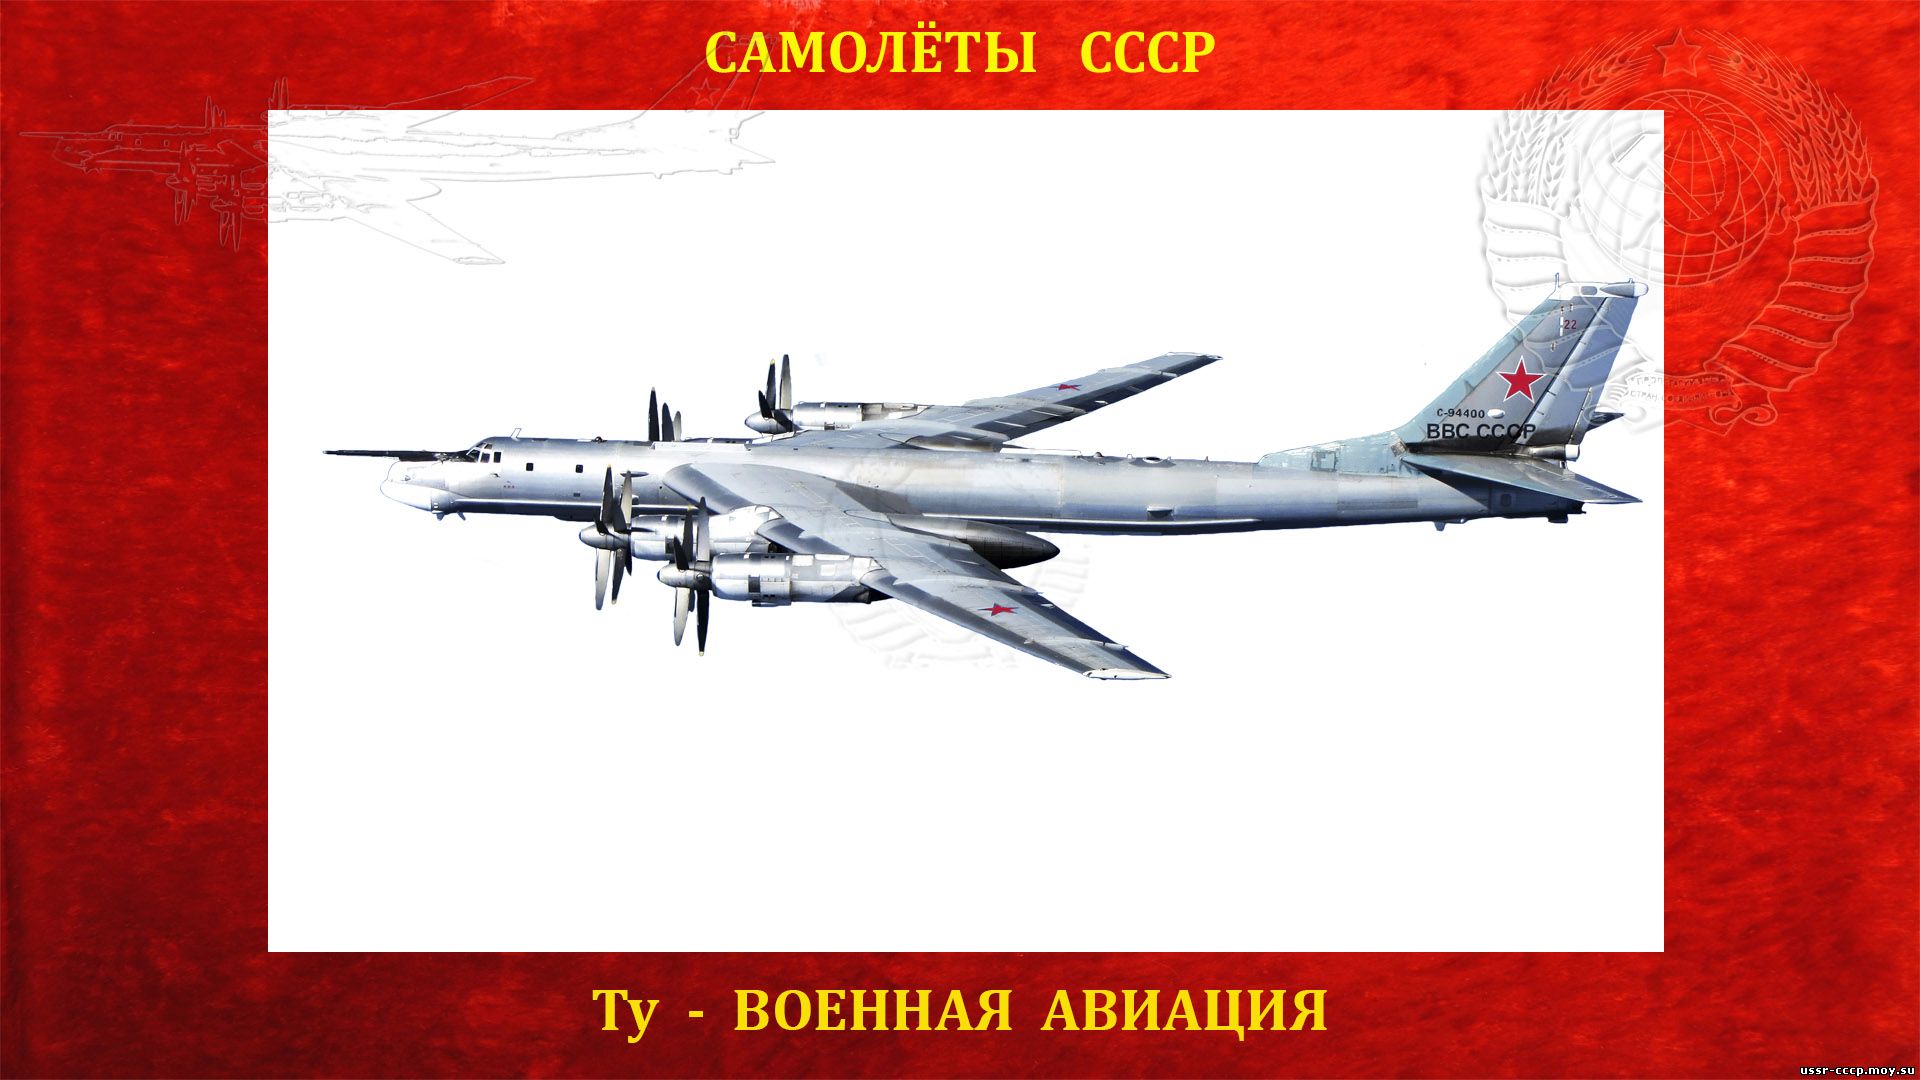 Ту-95 — По кодификации НАТО: Bear — «Медведь») — Советский турбовинтовой стратегический бомбардировщик-ракетоносец СССР (Полное повествование)